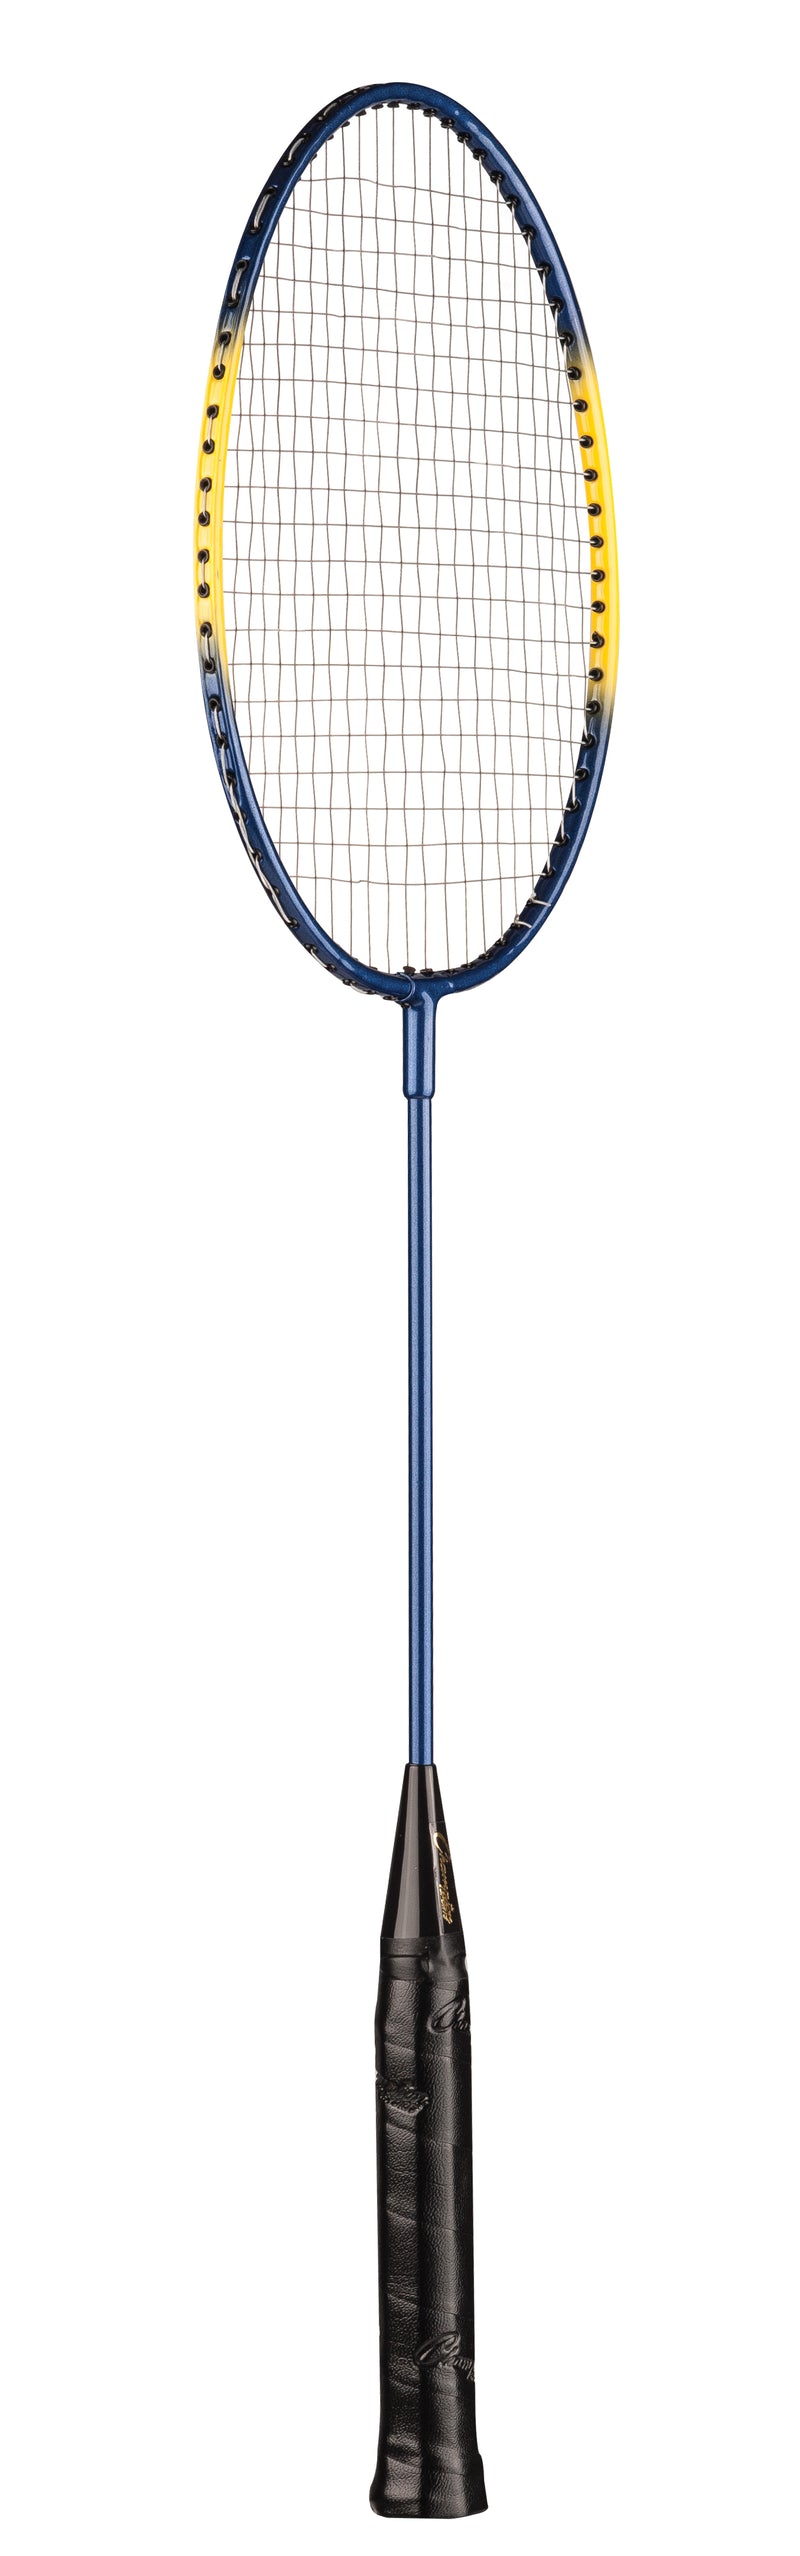 Champion Sports Heavy-Duty Steel Badminton Racket